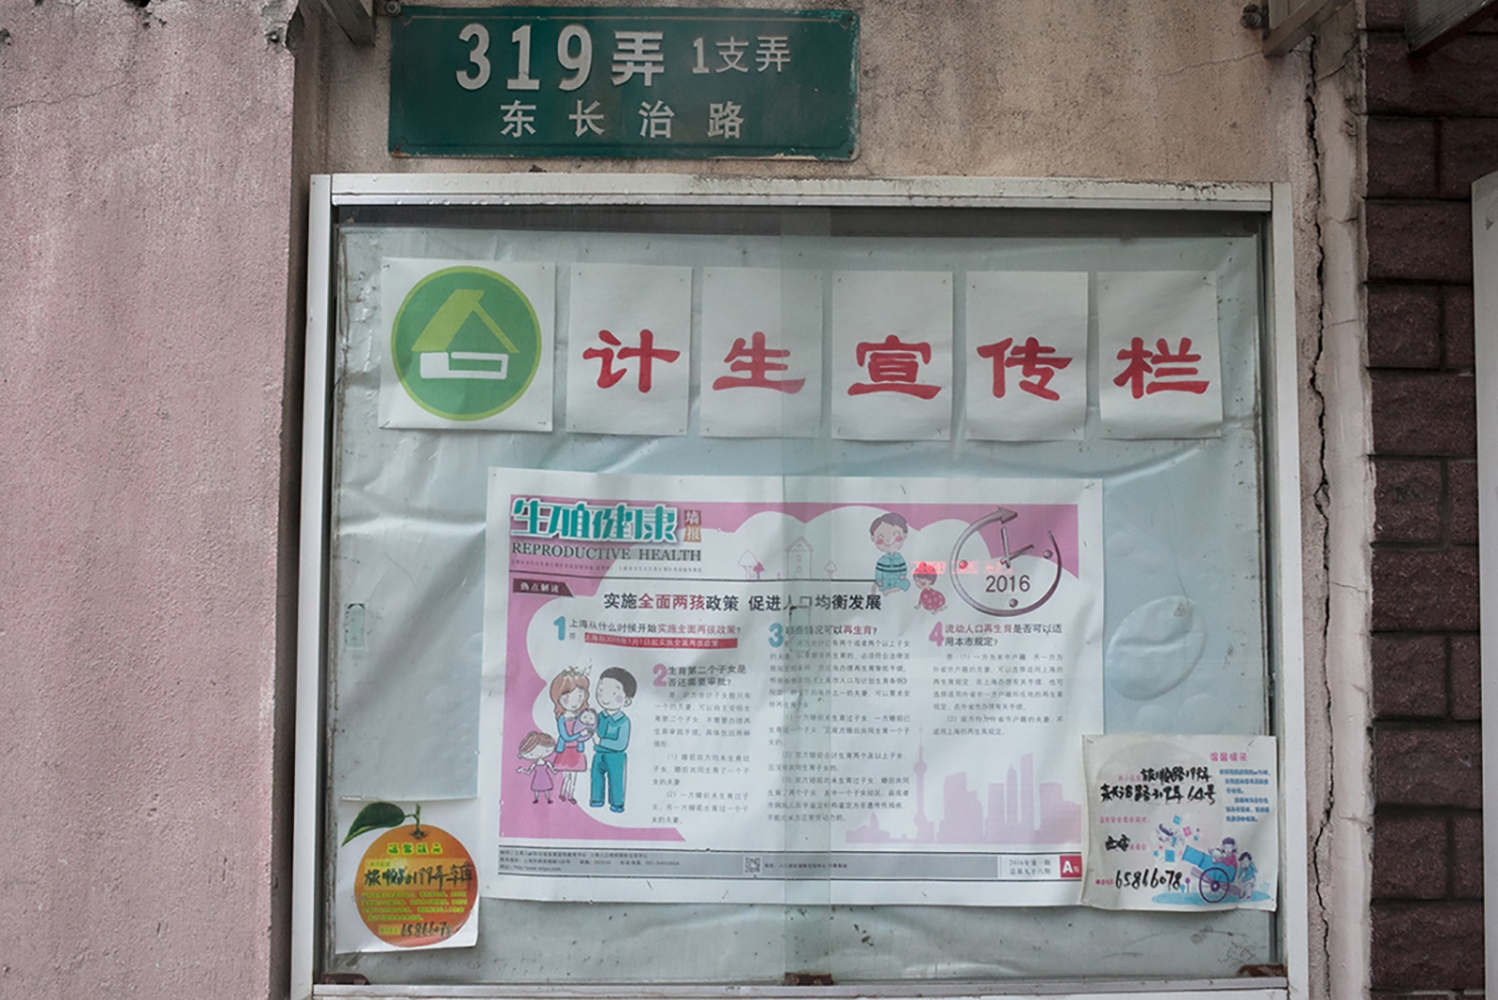 China: Birthing under public domain - ...